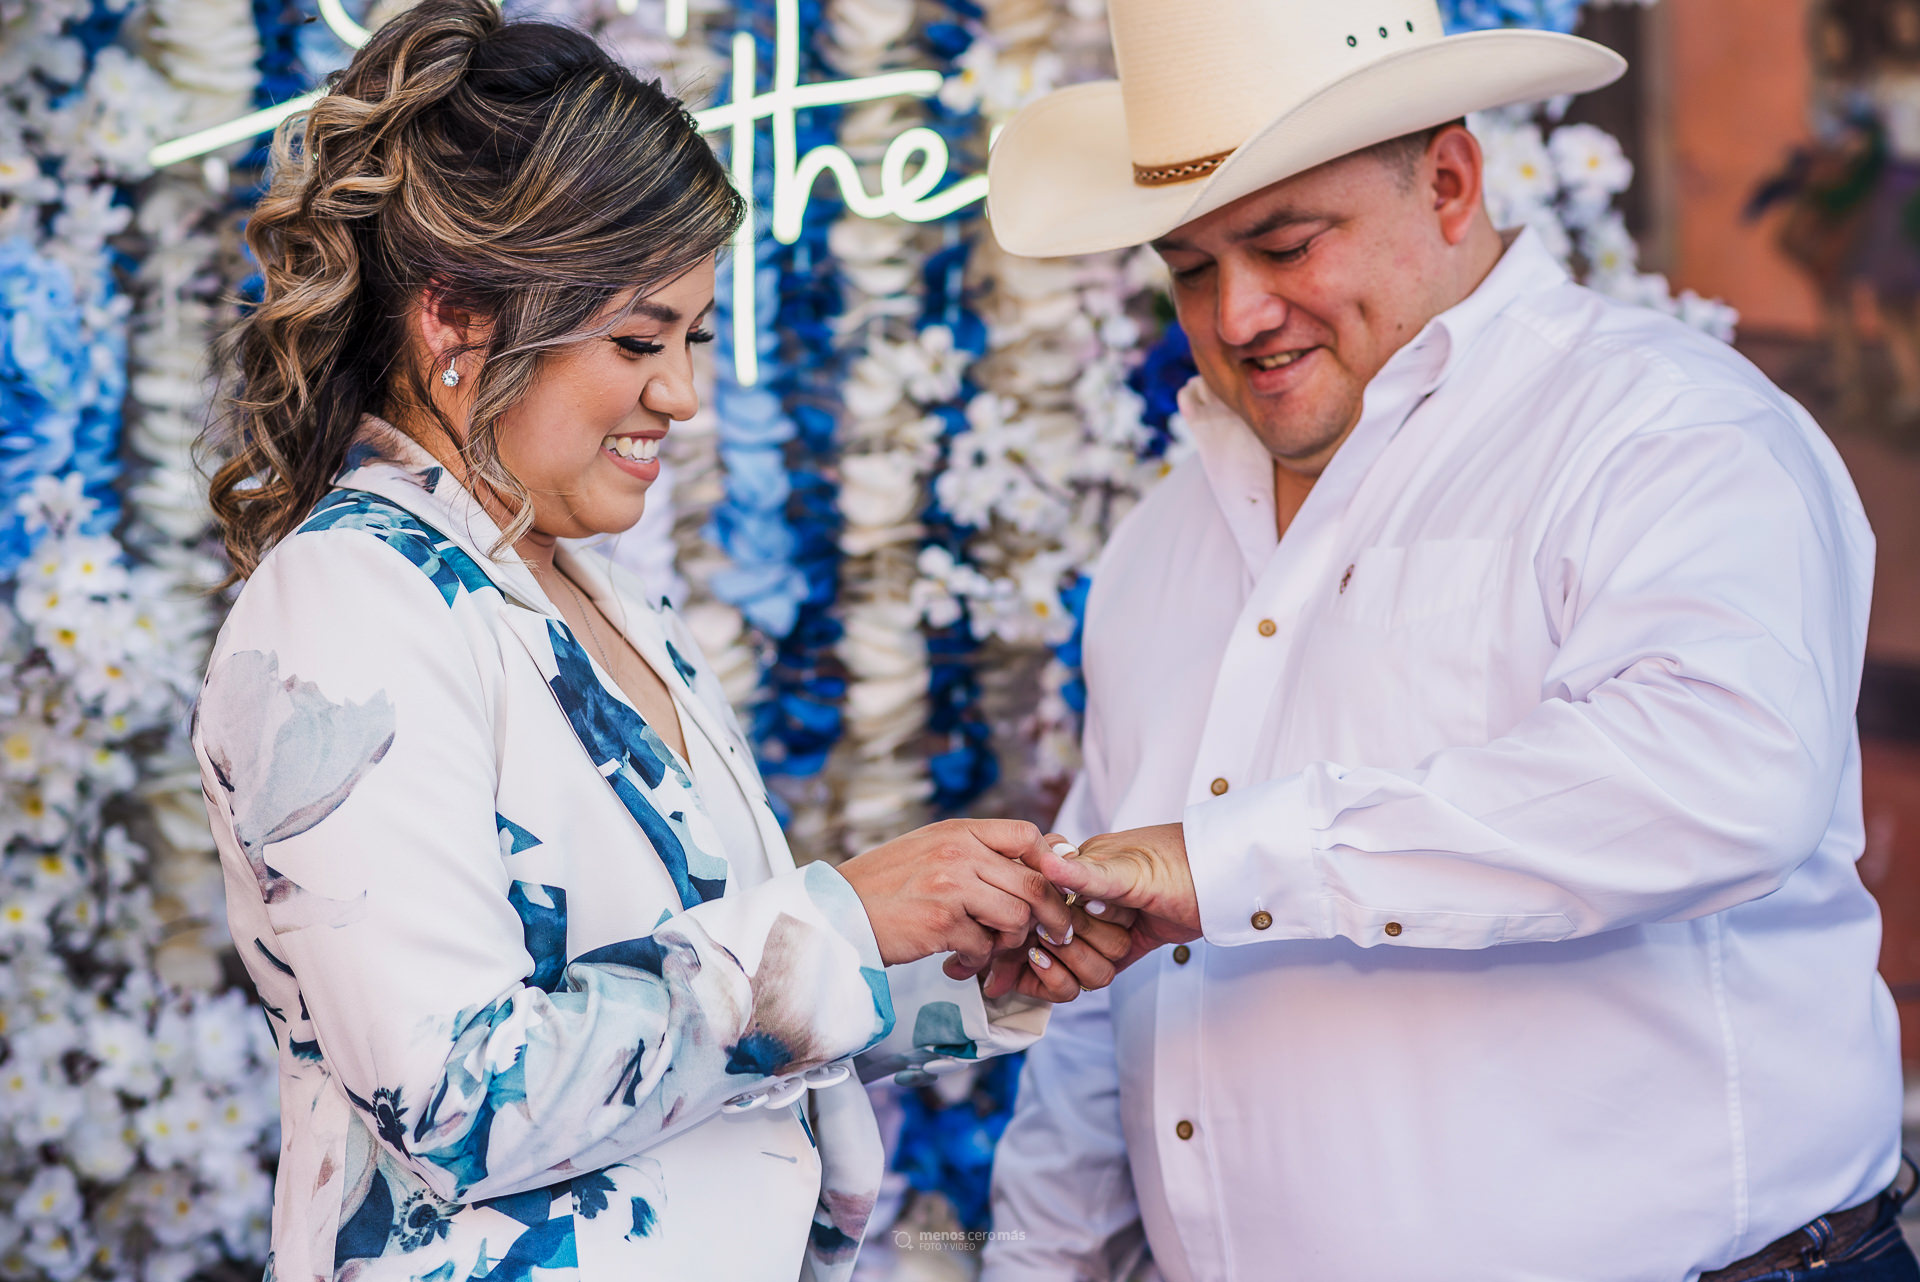 Compromiso eterno: Un intercambio de anillos lleno de amor y emoción en La Hacienda, durante la boda Los novios se miran a los ojos mientras la novia coloca el anillo al novio, sellando su futuro juntos, fotografía por "menosceromás".